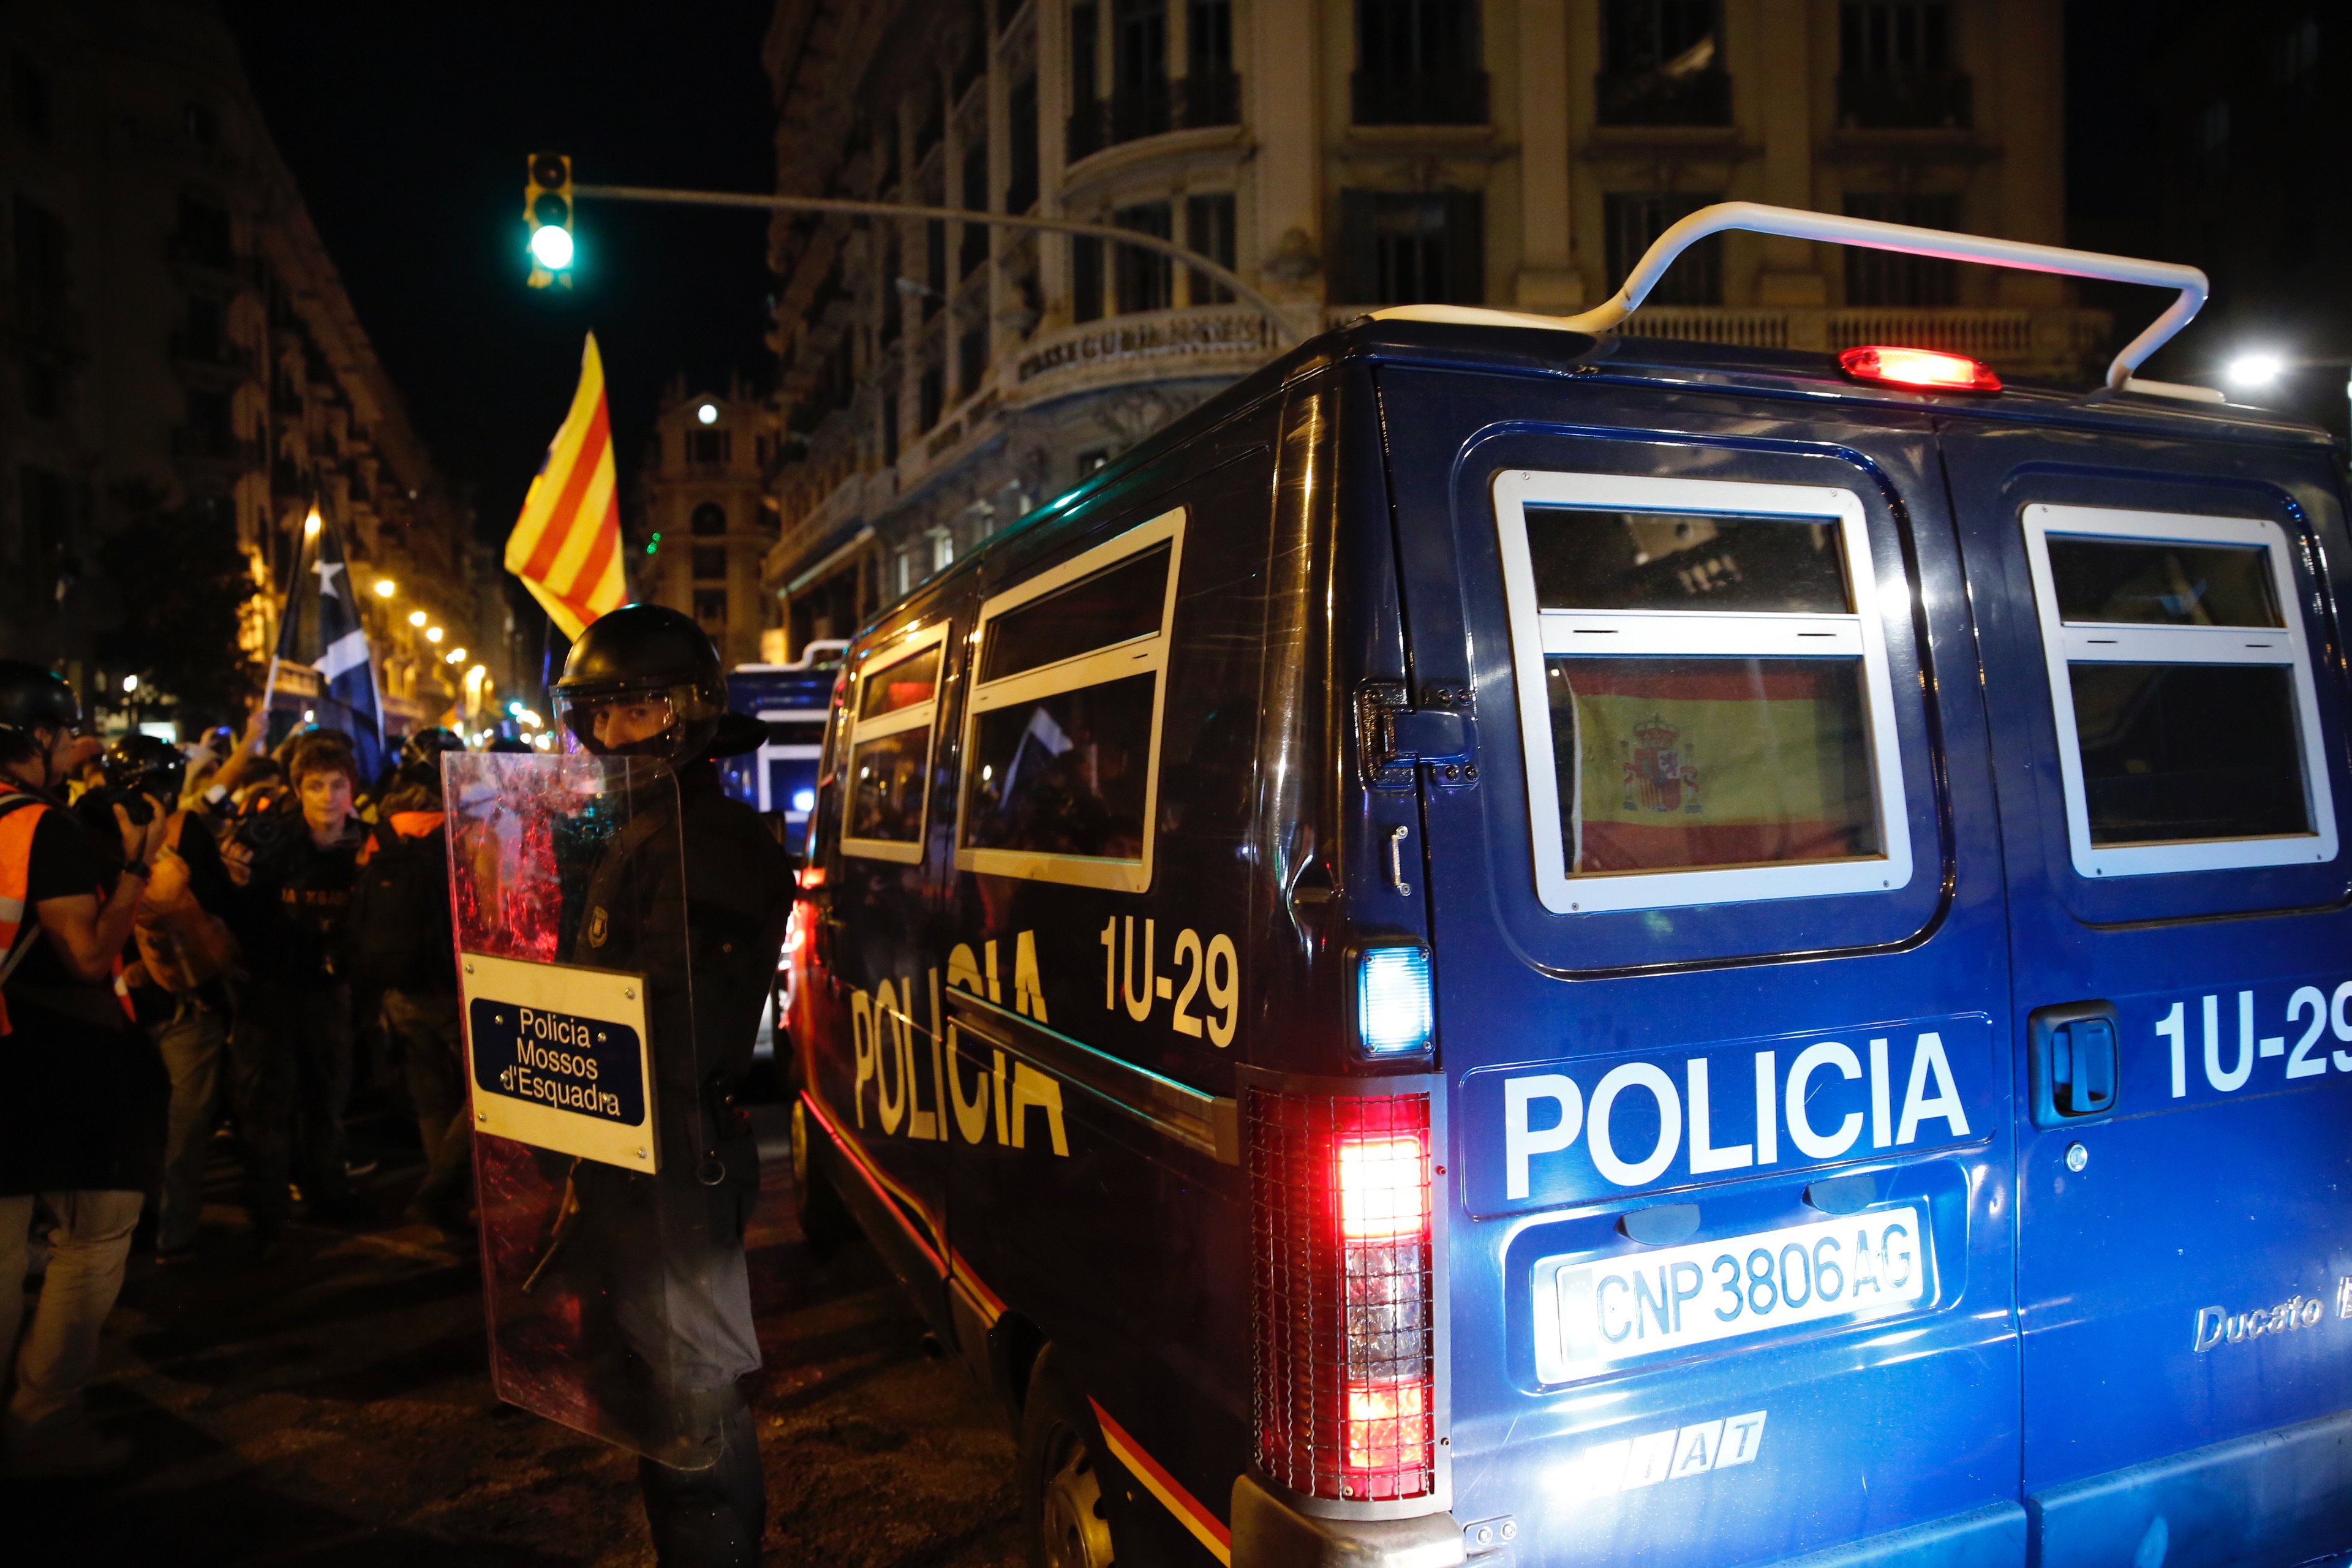 El Ministeri de l'Interior reforça el dispositiu policial per la visita del Rei a Catalunya